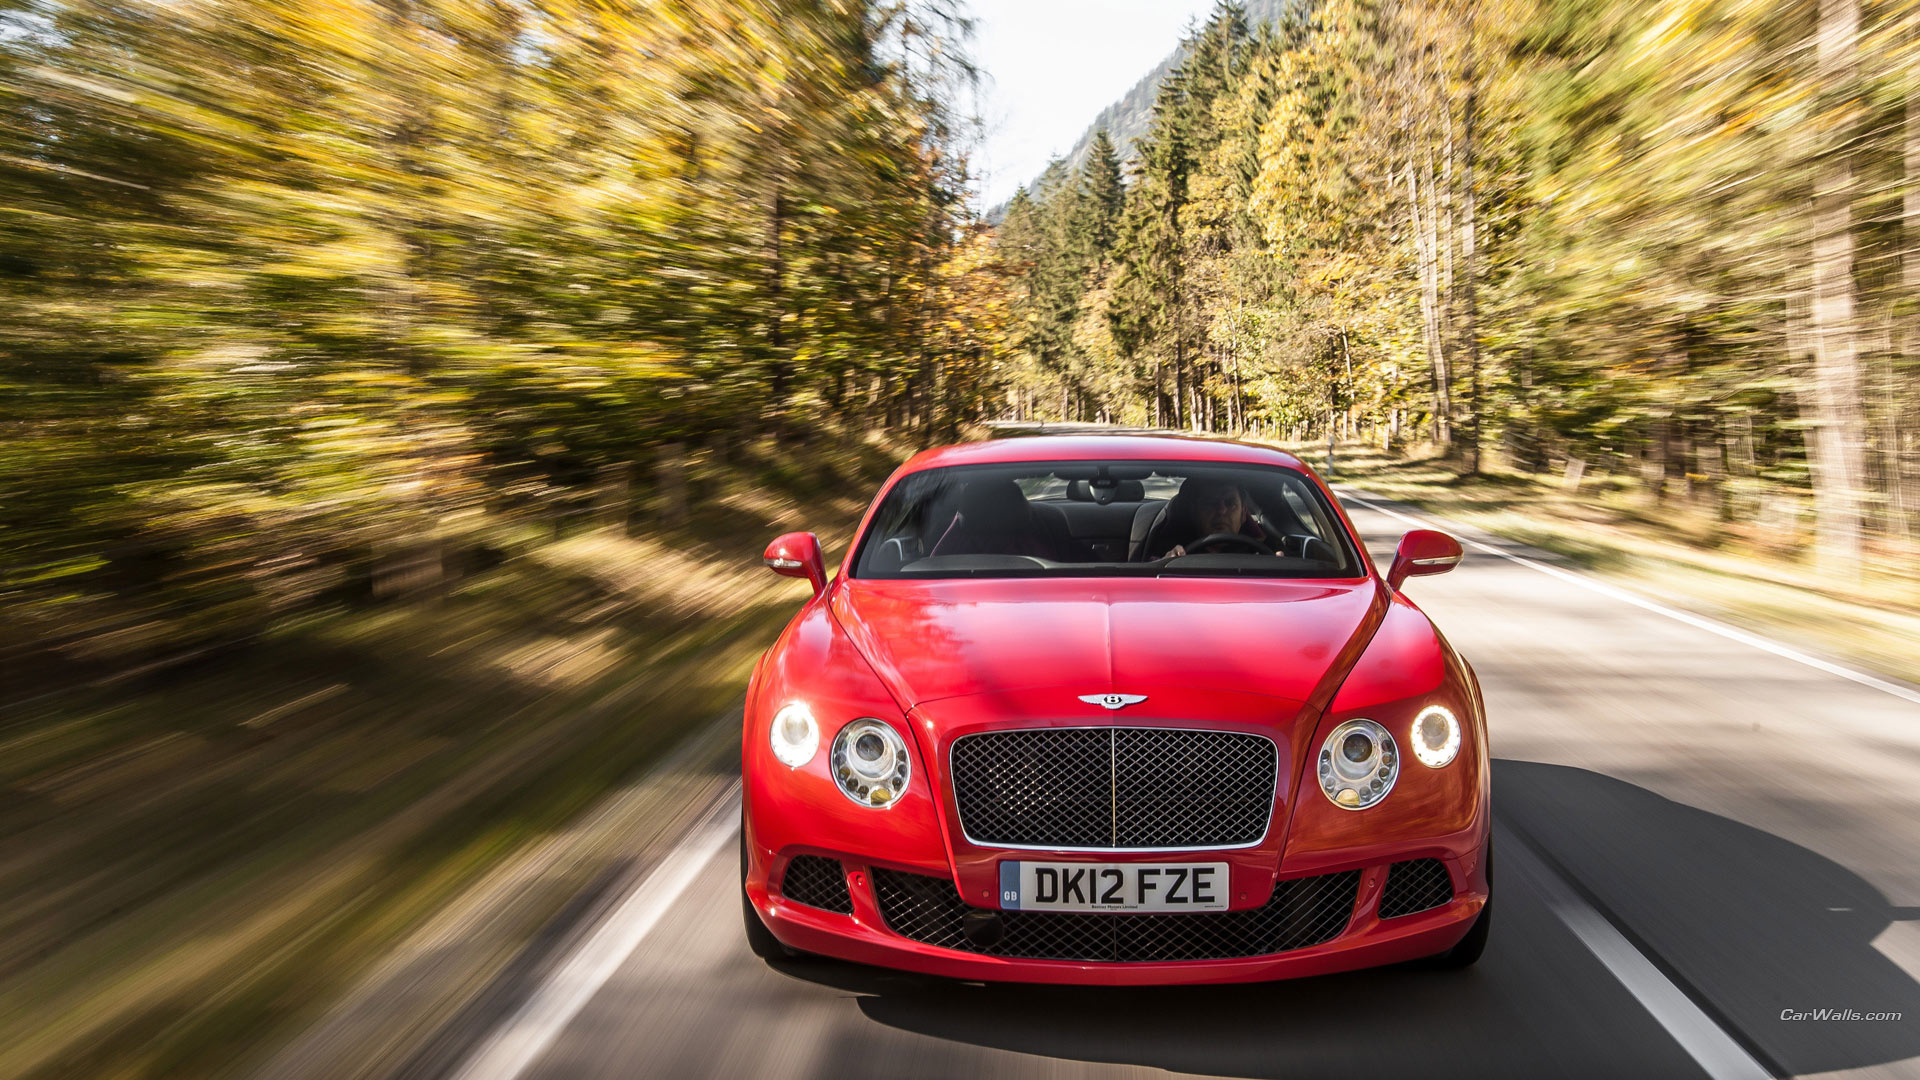 Descarga gratuita de fondo de pantalla para móvil de Bentley Continental Gt Velocidad, Bentley, Vehículos.